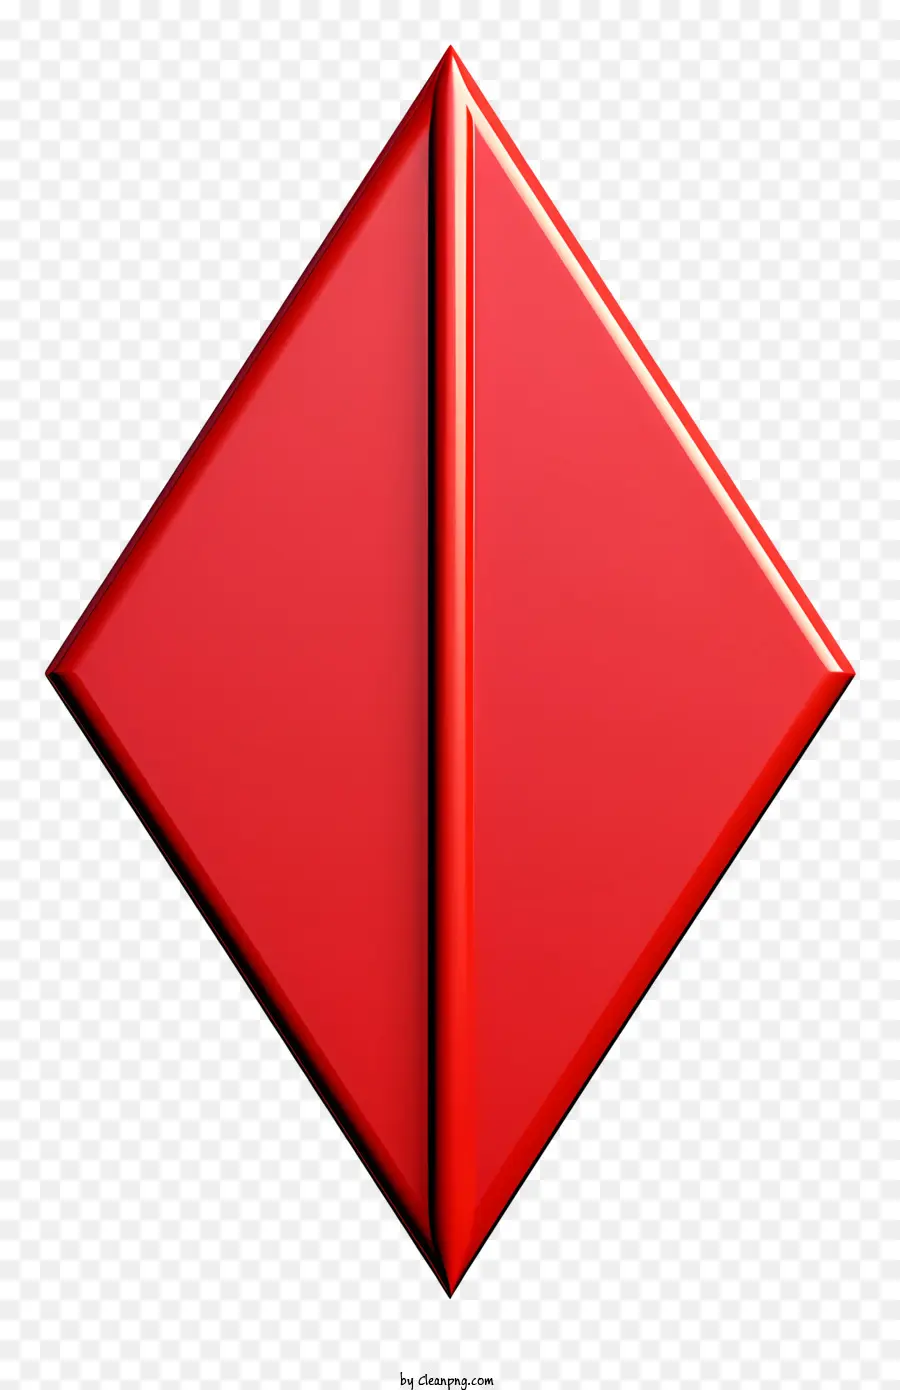 freccia rossa - Triangolo rosso metallo/plastica per uso decorativo